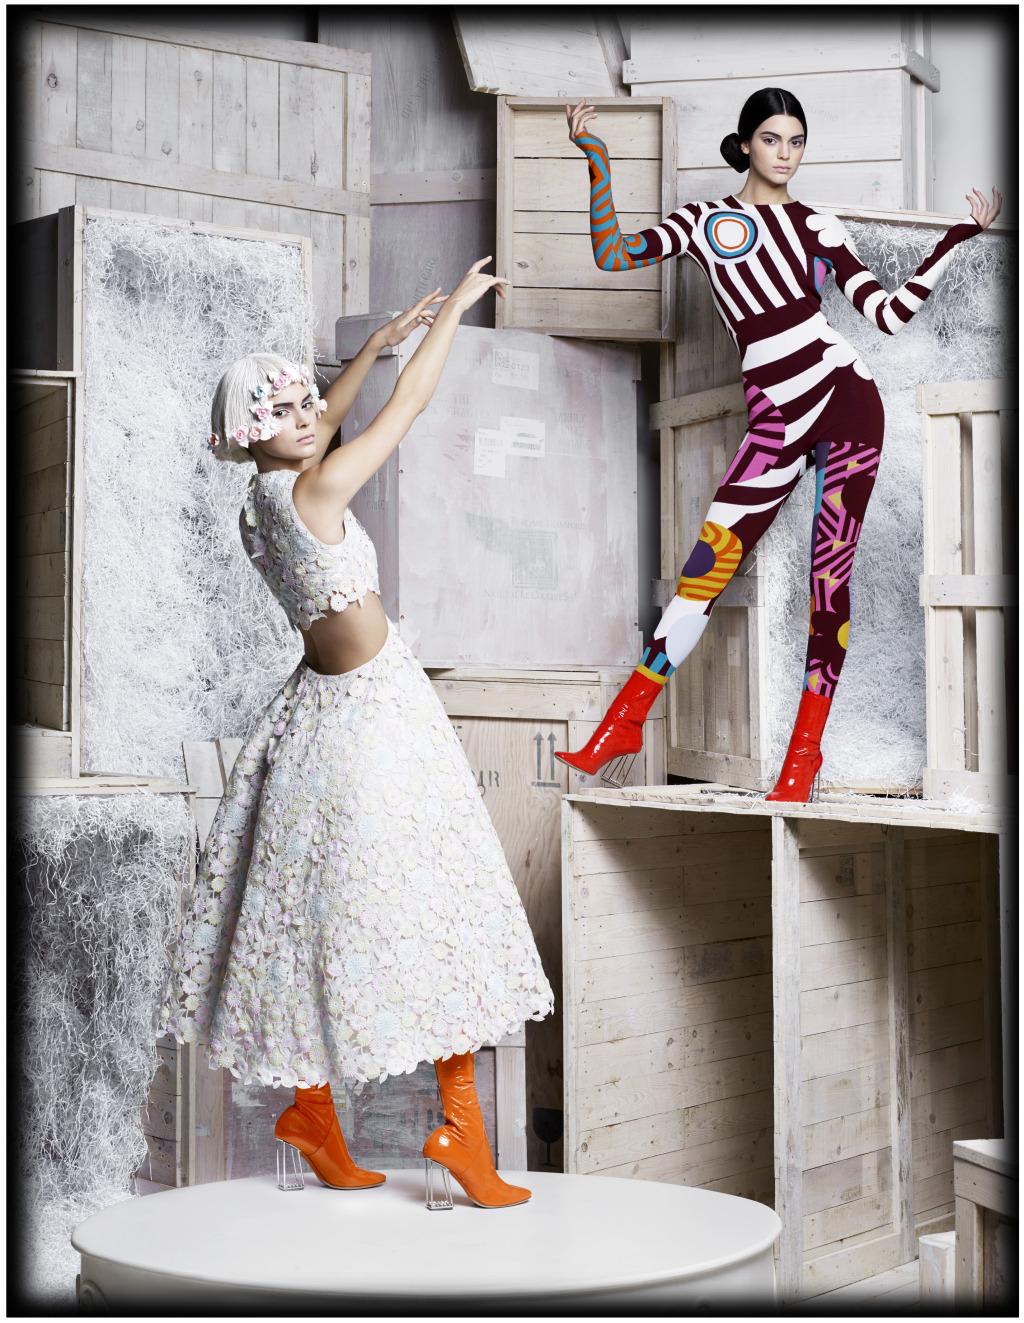 時尚大帝Karl_Lagerfeld將於巴黎美術館舉辦個人攝影展_「視覺之旅」02.jpg